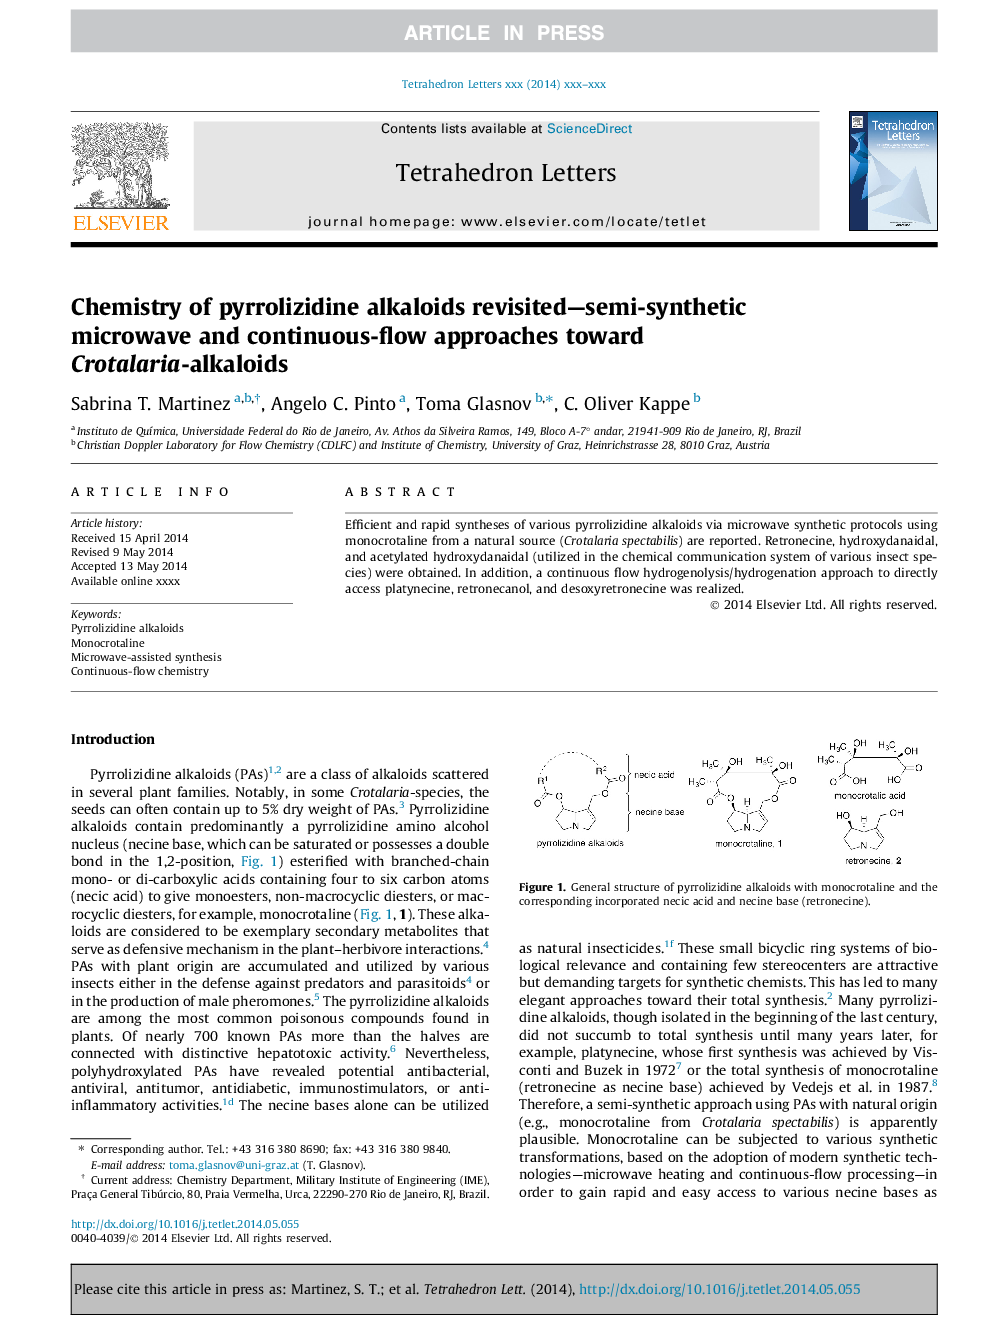 شیمی از الکوالوئیدهای پیررولیزیدین مجددا - نیمه سنتتیک مایکروویو و جریان پیوسته جریان به سمت کروالتاریا - آلکالوئیدها 